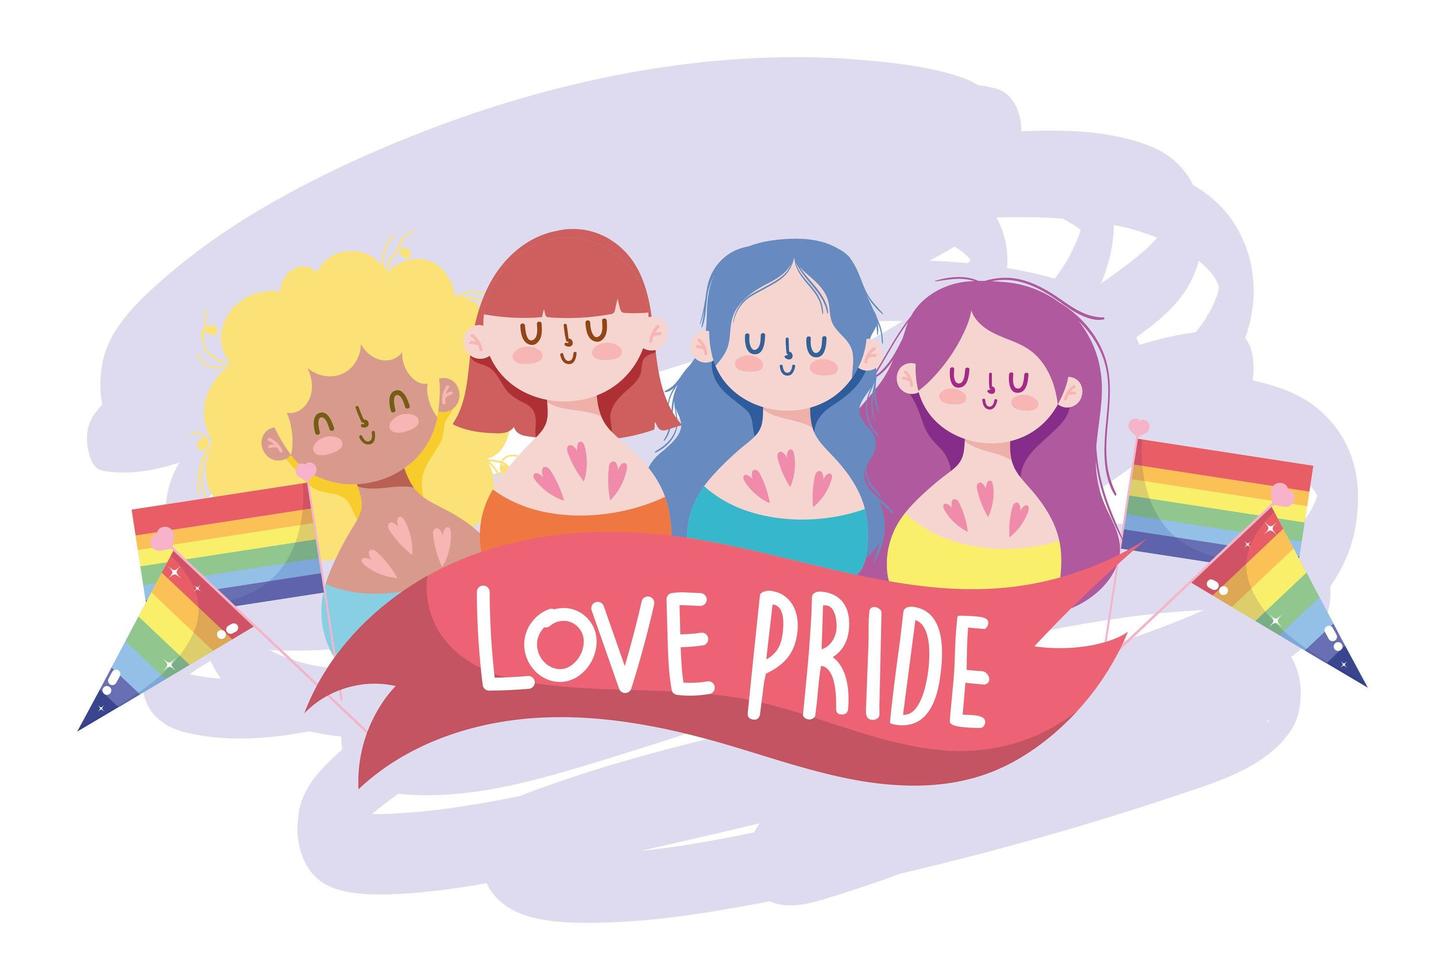 tecknade flickor med lgtbi-flaggor och vektordesign för love pride-band vektor